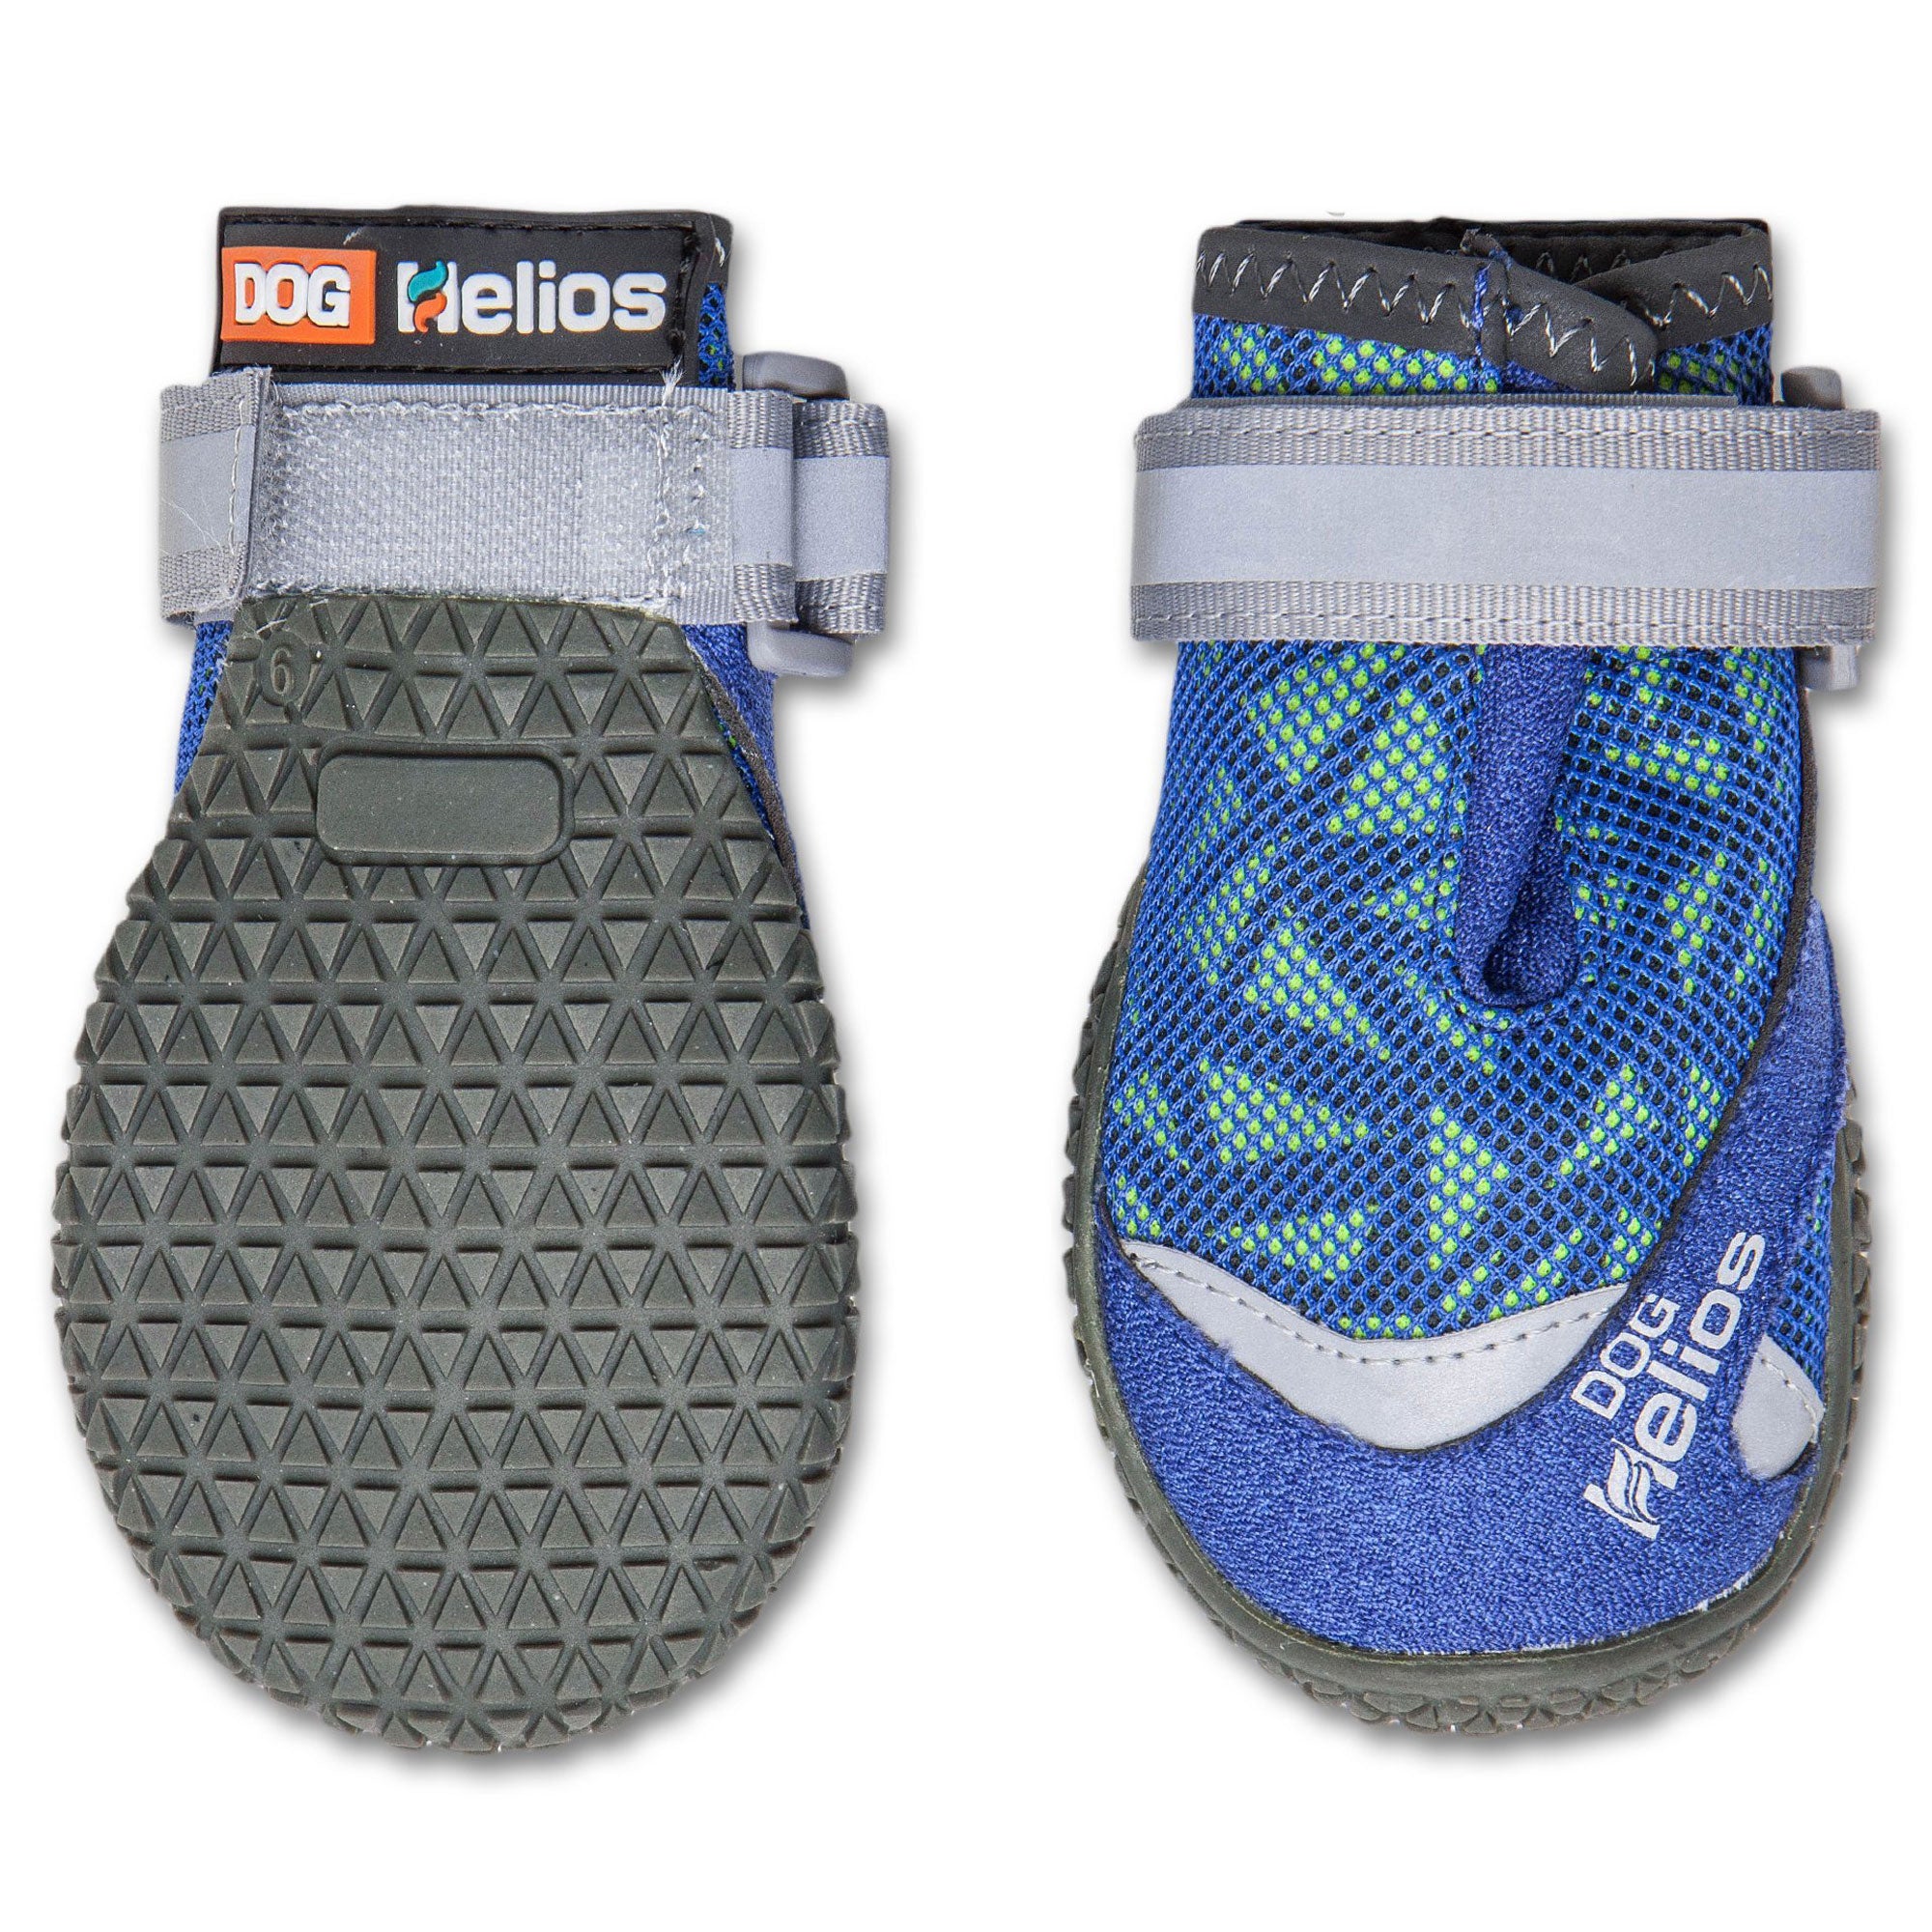 Dog Helios® Surface Performance Dog Shoes - Blue - X-Large